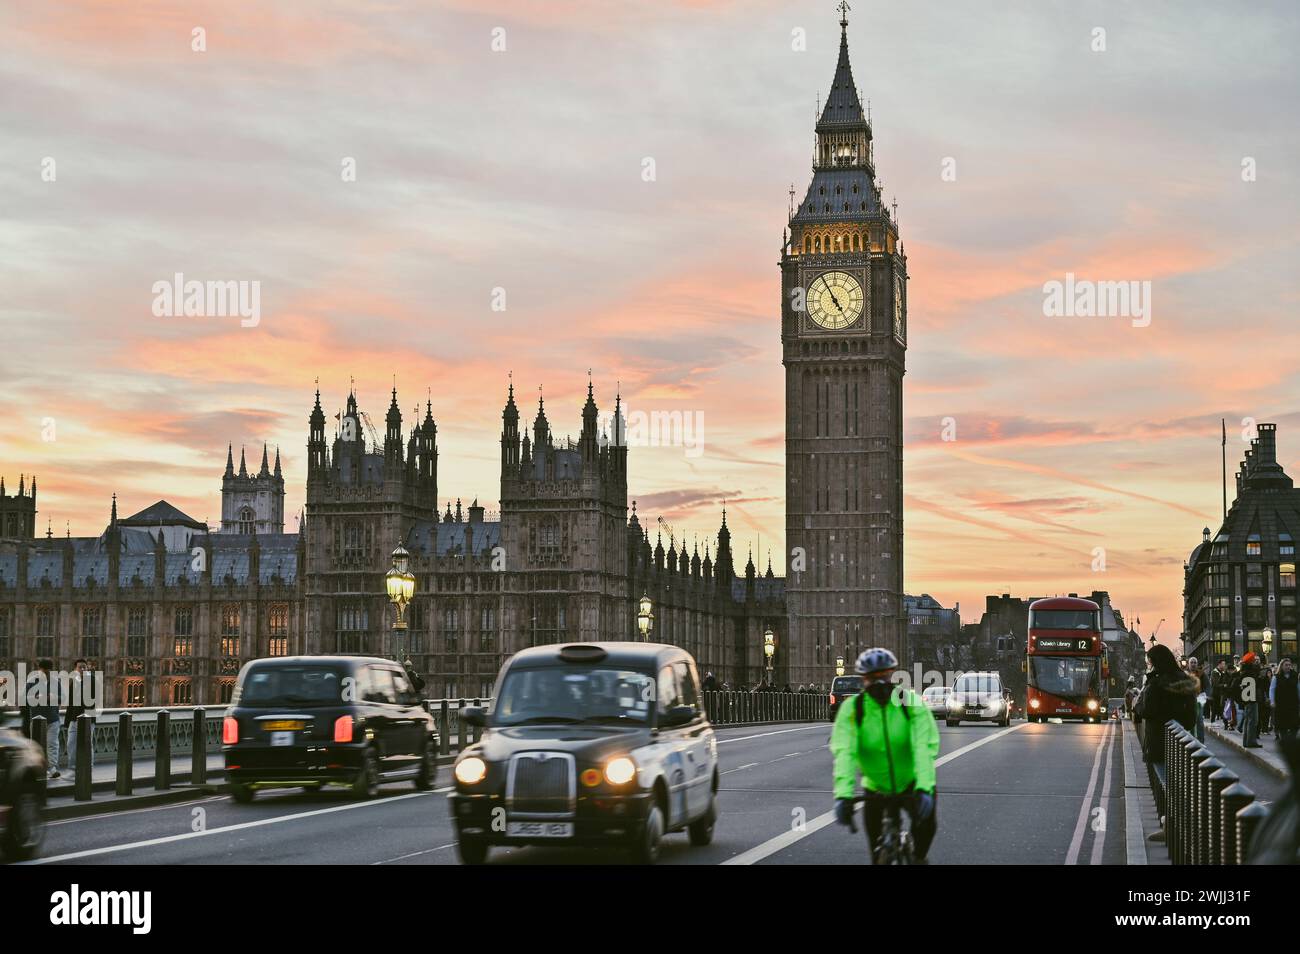 Coucher de soleil sur Westminster et Big Ben, Londres Banque D'Images